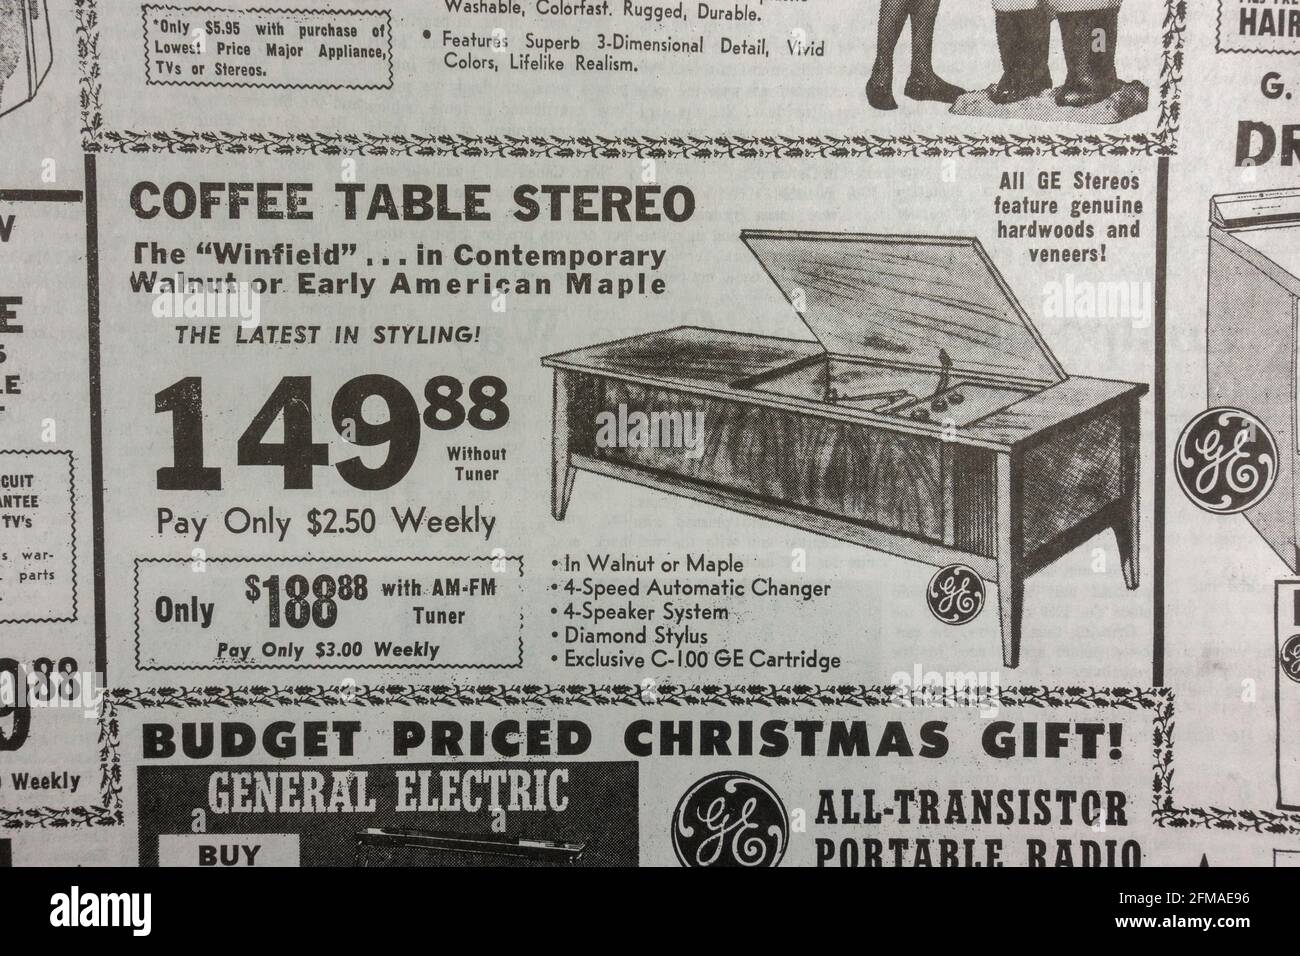 Werbung für die Winfield Couchtisch-Stereoanlage in den Dallas Morning News (Nachbildung) am 23. November 1963 (Tag nach dem Tod von JFK). Stockfoto